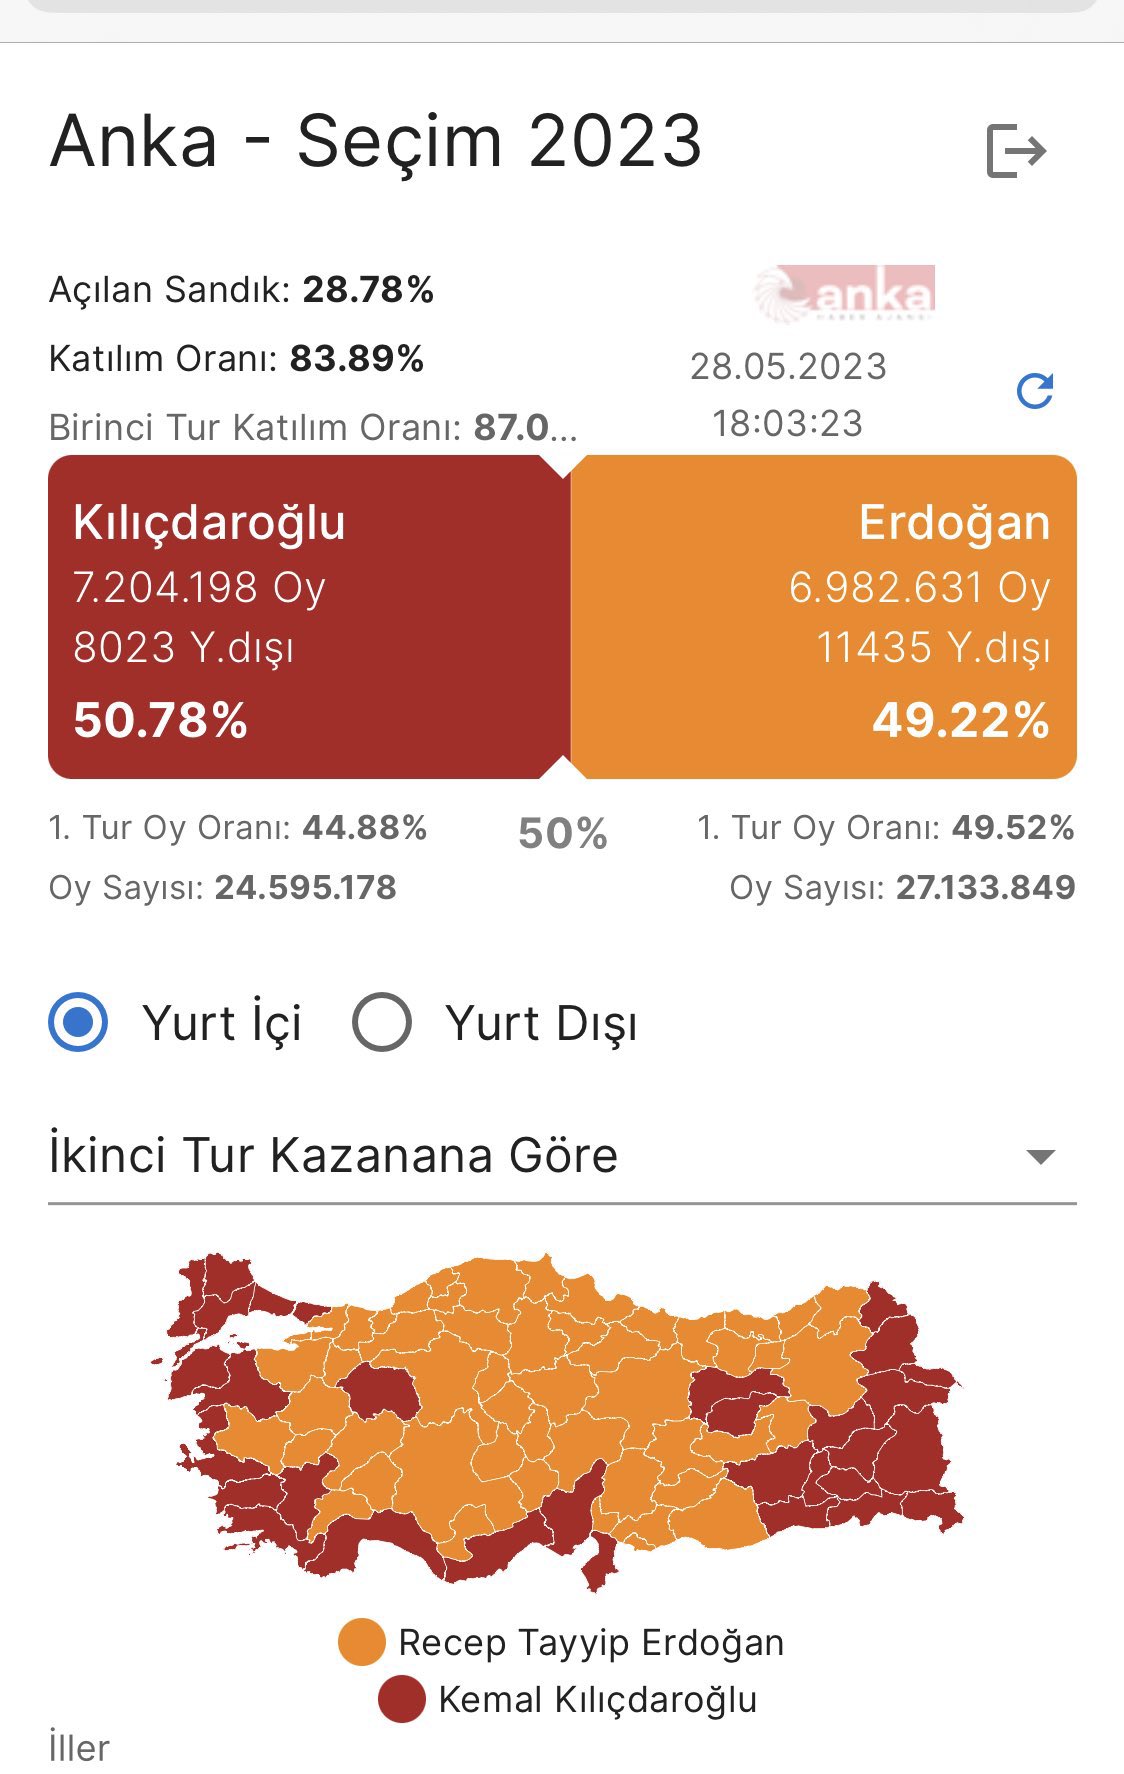 kılıçdaroğlu 50 erdoğan 4